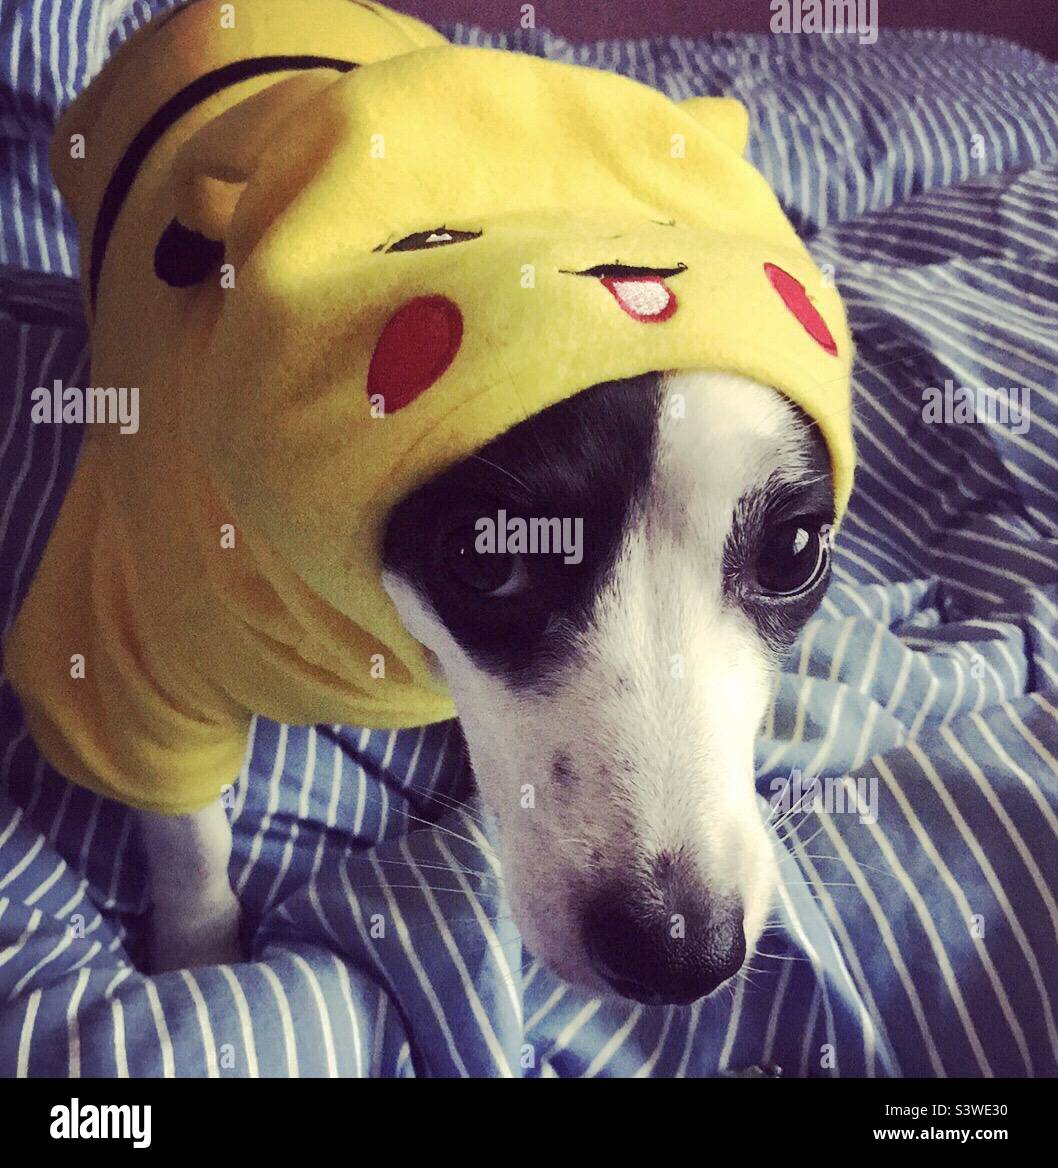 Un Jack Russell portant un costume de pikachu Pokémon et regardant misérable à ce sujet Banque D'Images